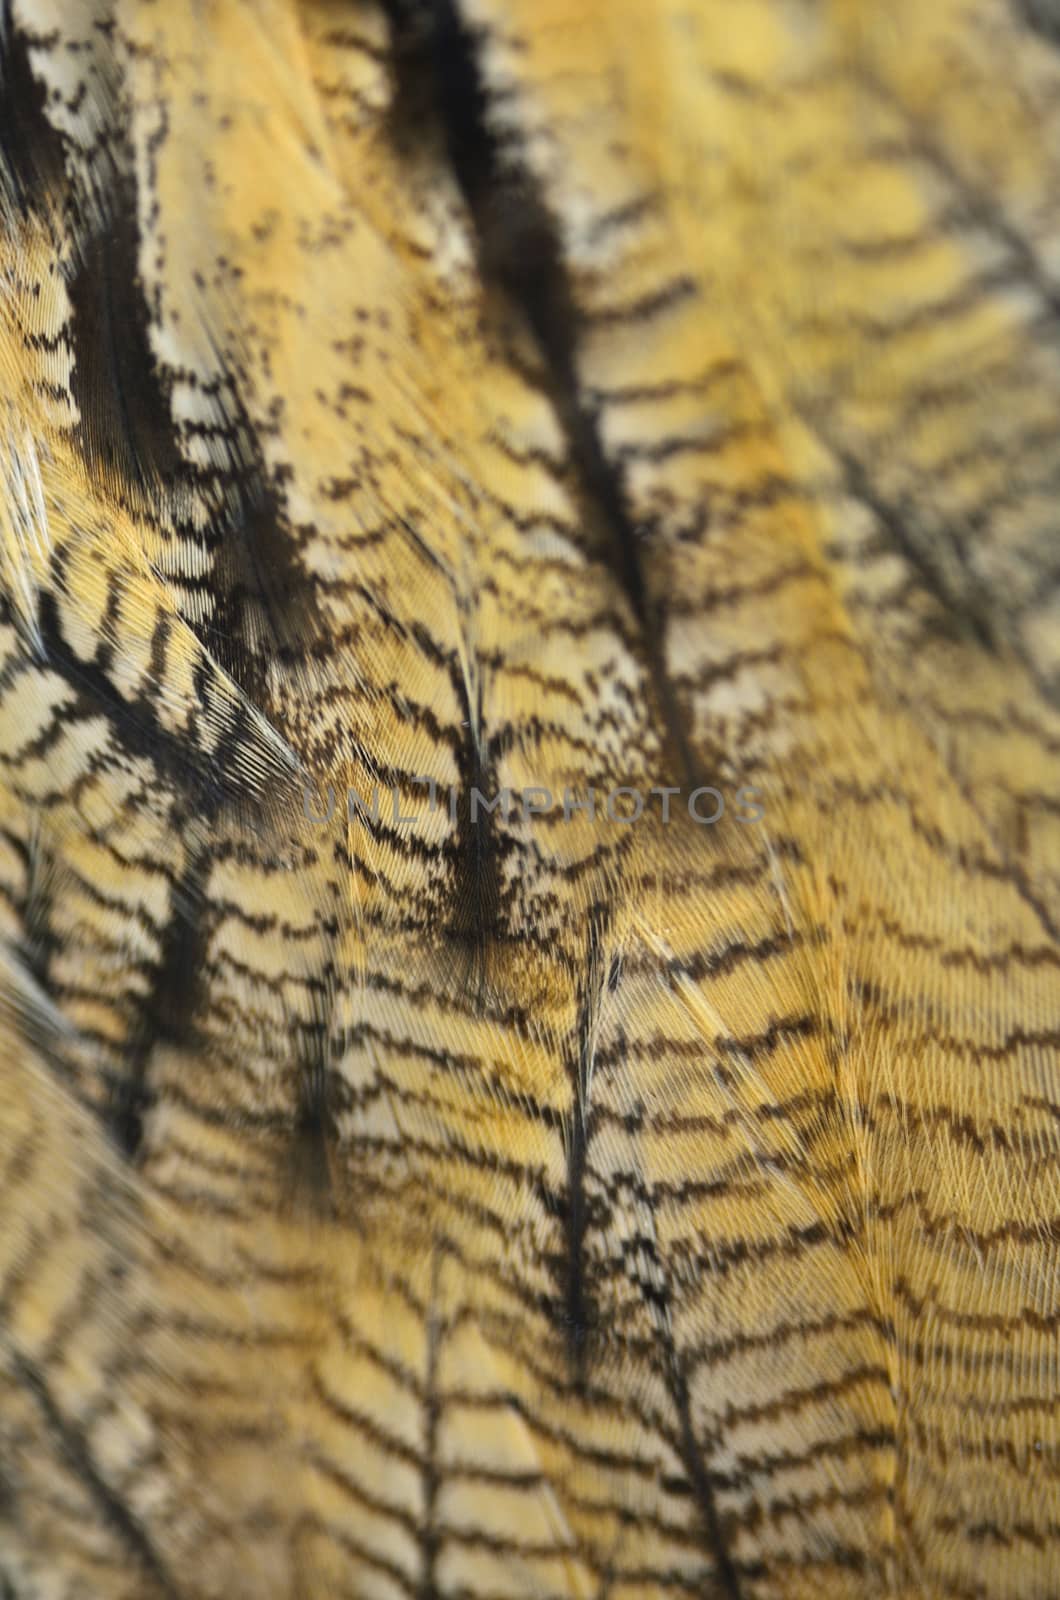 Eurasian Eagle Owl feathers by panuruangjan